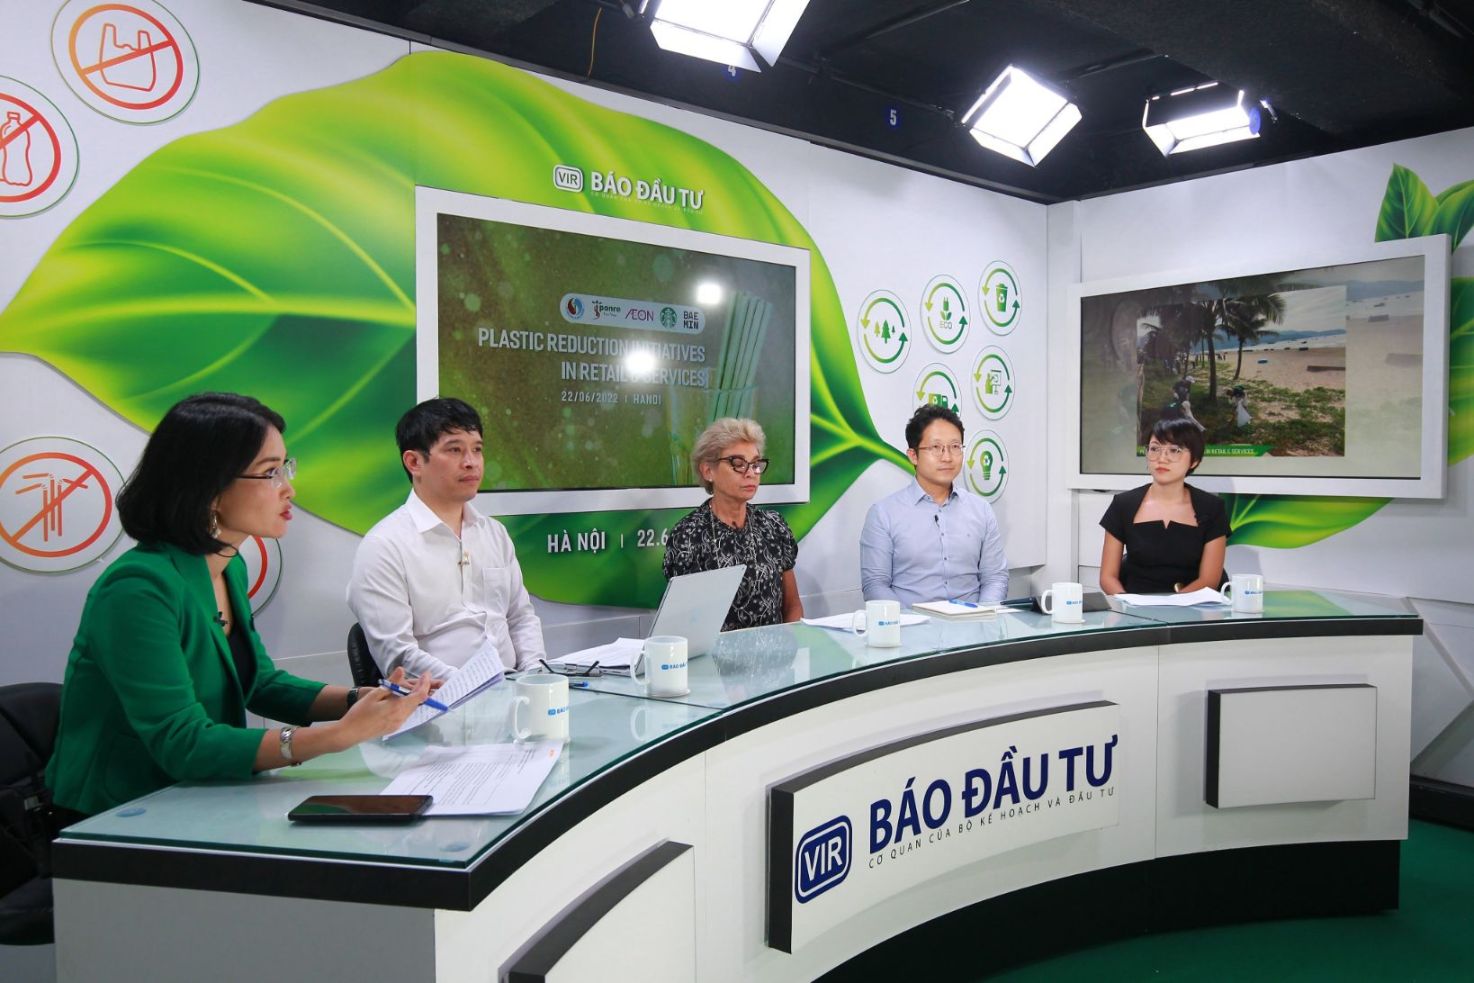 Talkshow  Sáng kiến giảm nhựa trong ngành bán lẻ và dịch vụ  Ứng dụng BAEMIN nối dài hành trình xanh bền vững tại Việt Nam